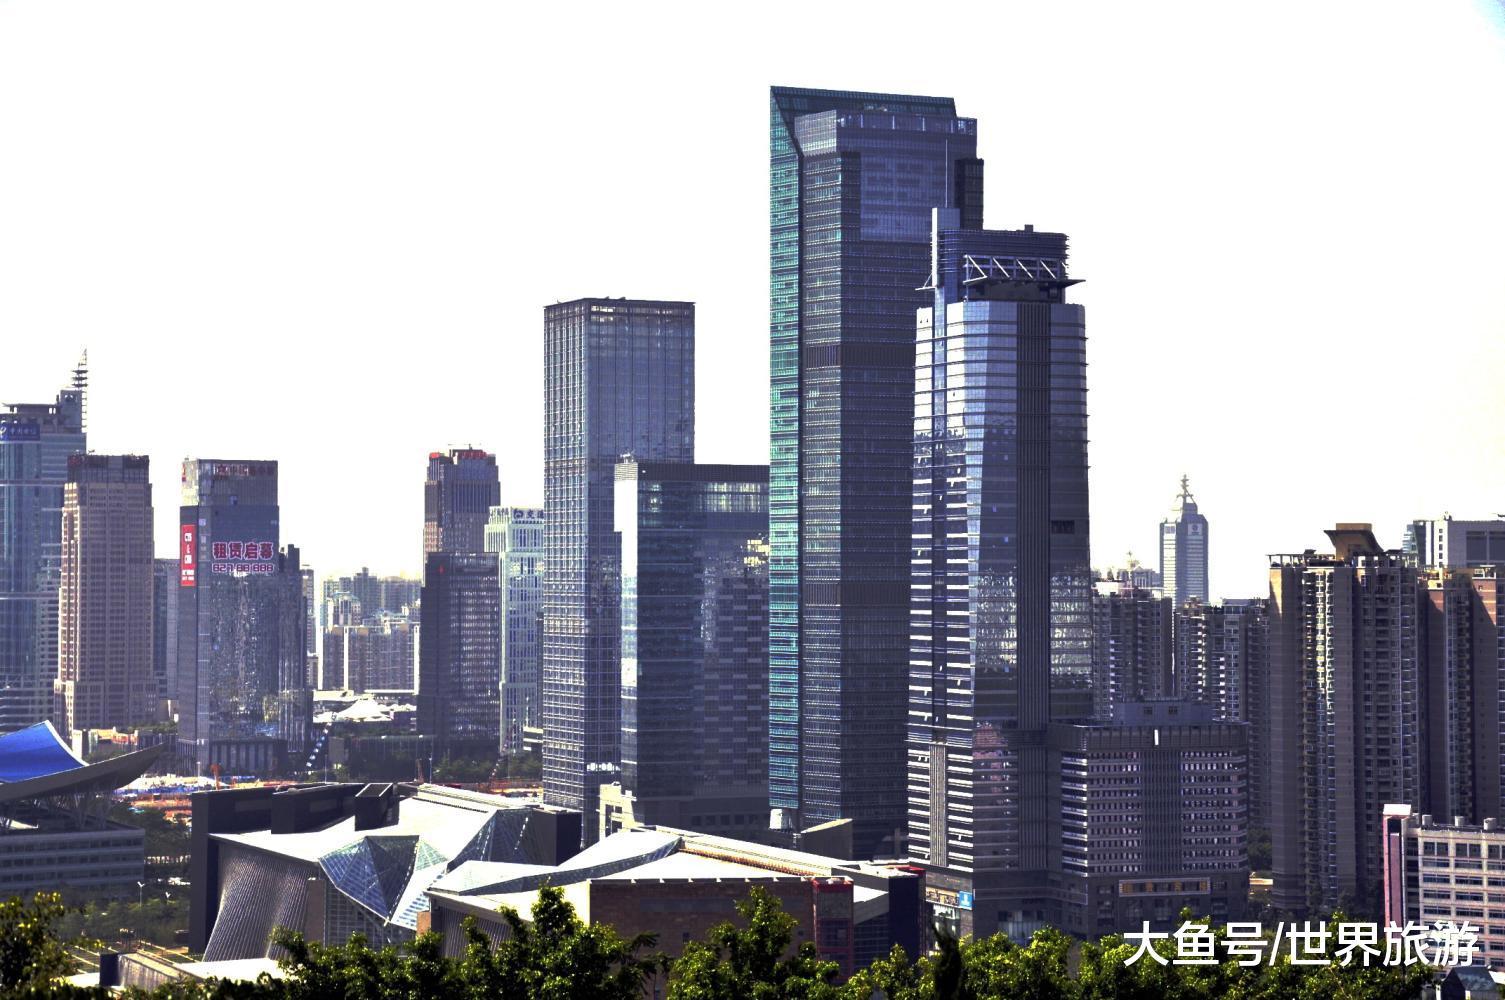 深圳和苏州, 论第五直辖市, 谁的希望更大一些